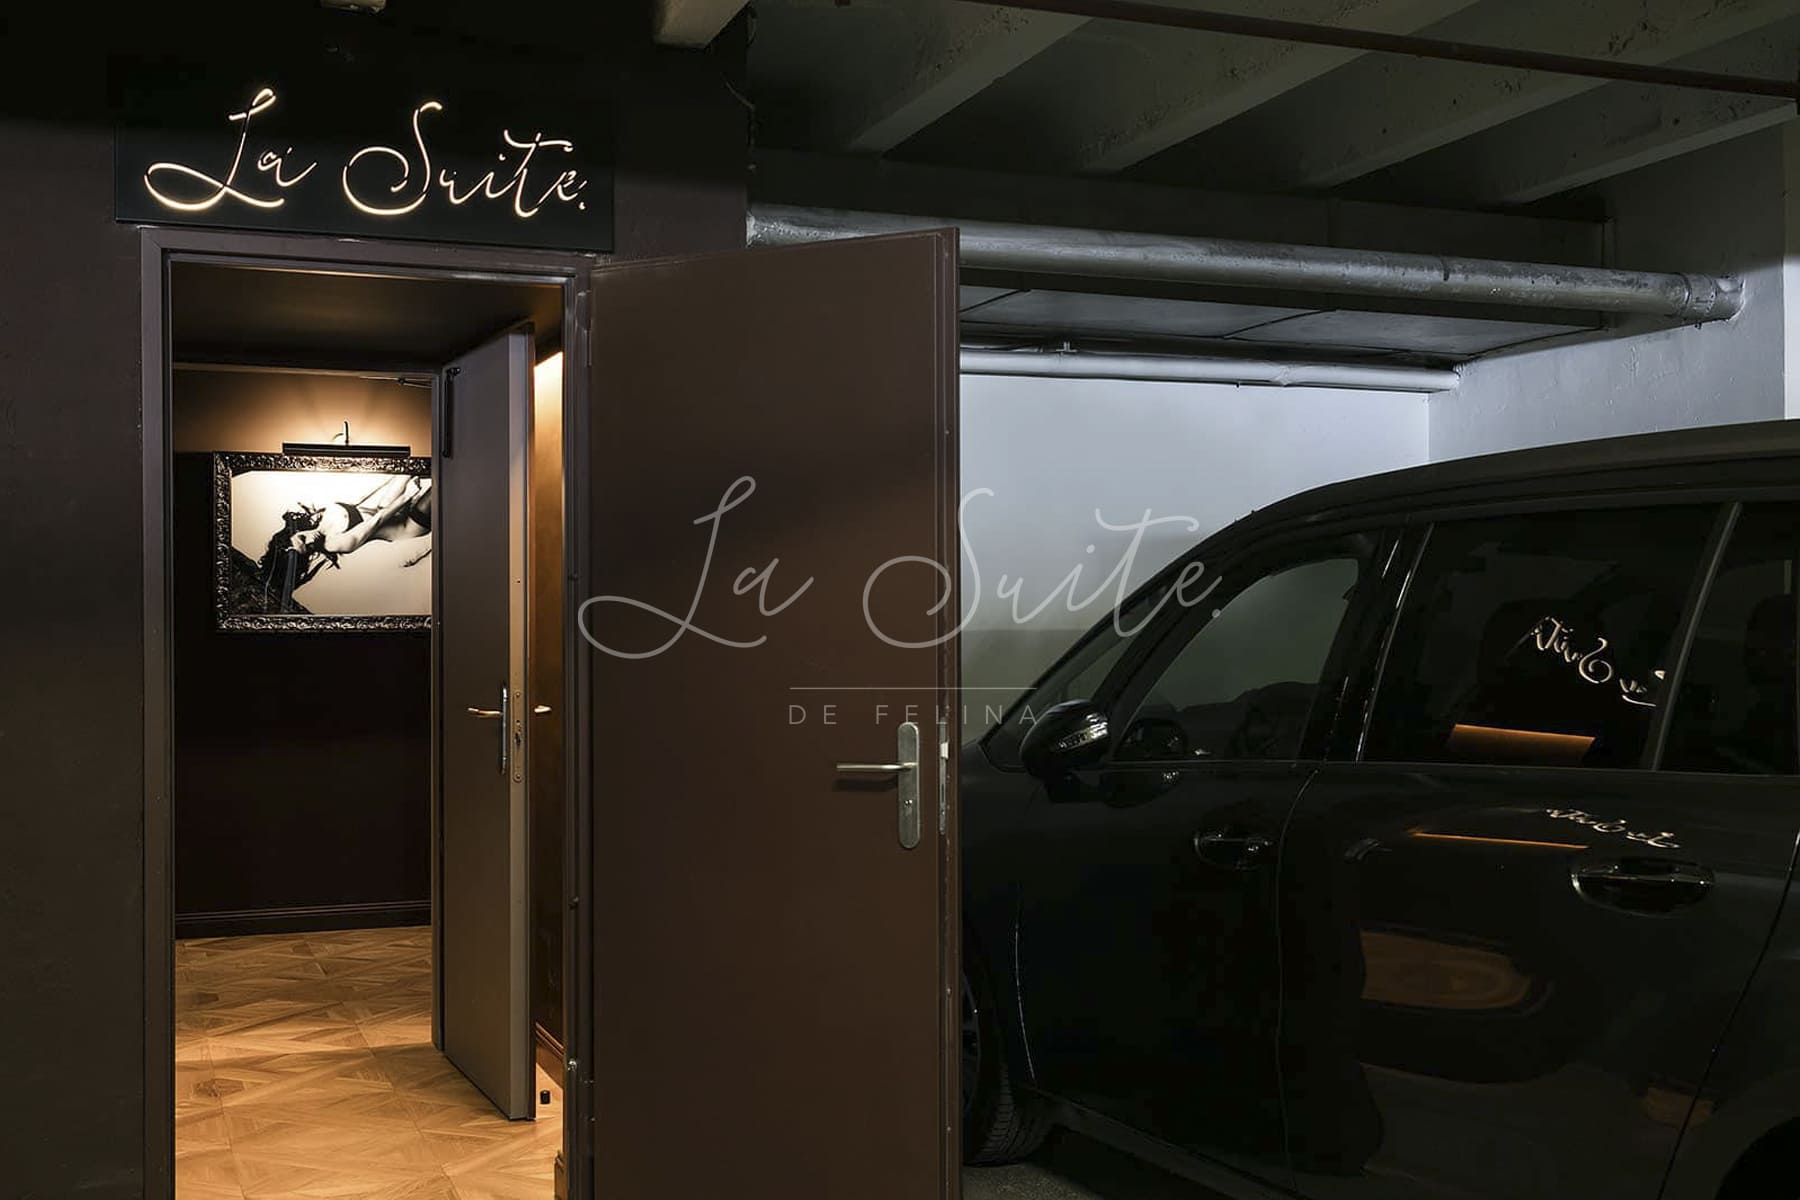 Entrée discrète dans le parking souterrain de la luxueuse maison d'escorte La Suite, Barcelone